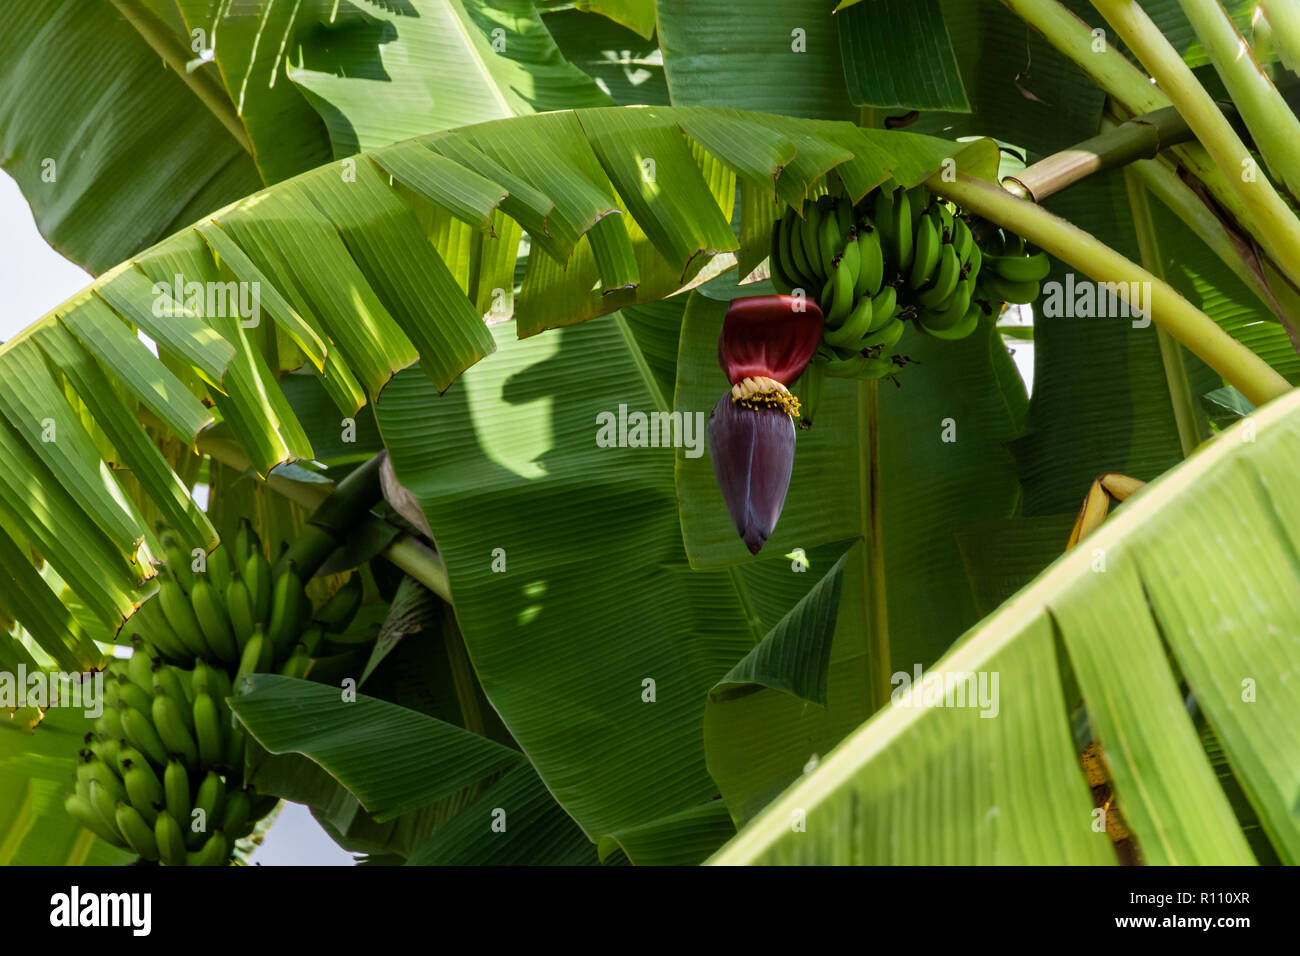 Grüner Banane Bündel mit bunten Blumen befestigt, Teil einer hawaiianischen Plantage auf der grossen Insel. Palmwedel, zusätzliche Bananen im Hintergrund. Stockfoto